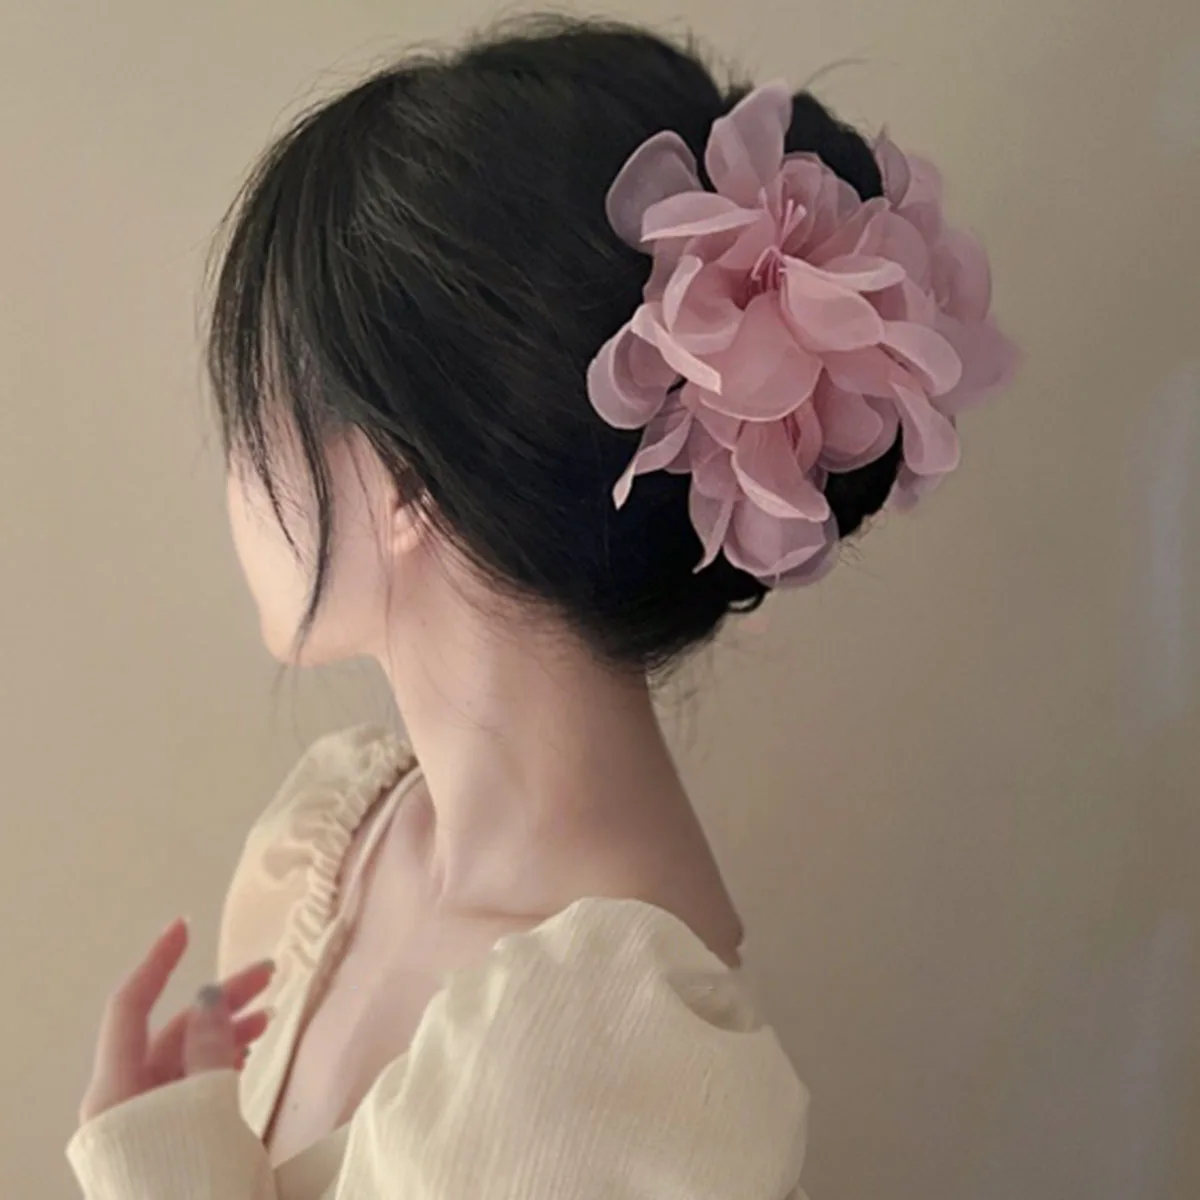 

Корейский зажим для волос из органзы с жемчужинами и цветами, заколка для конского хвоста в стиле ретро, модный зажим для волос для милой девушки, изящные аксессуары для волос